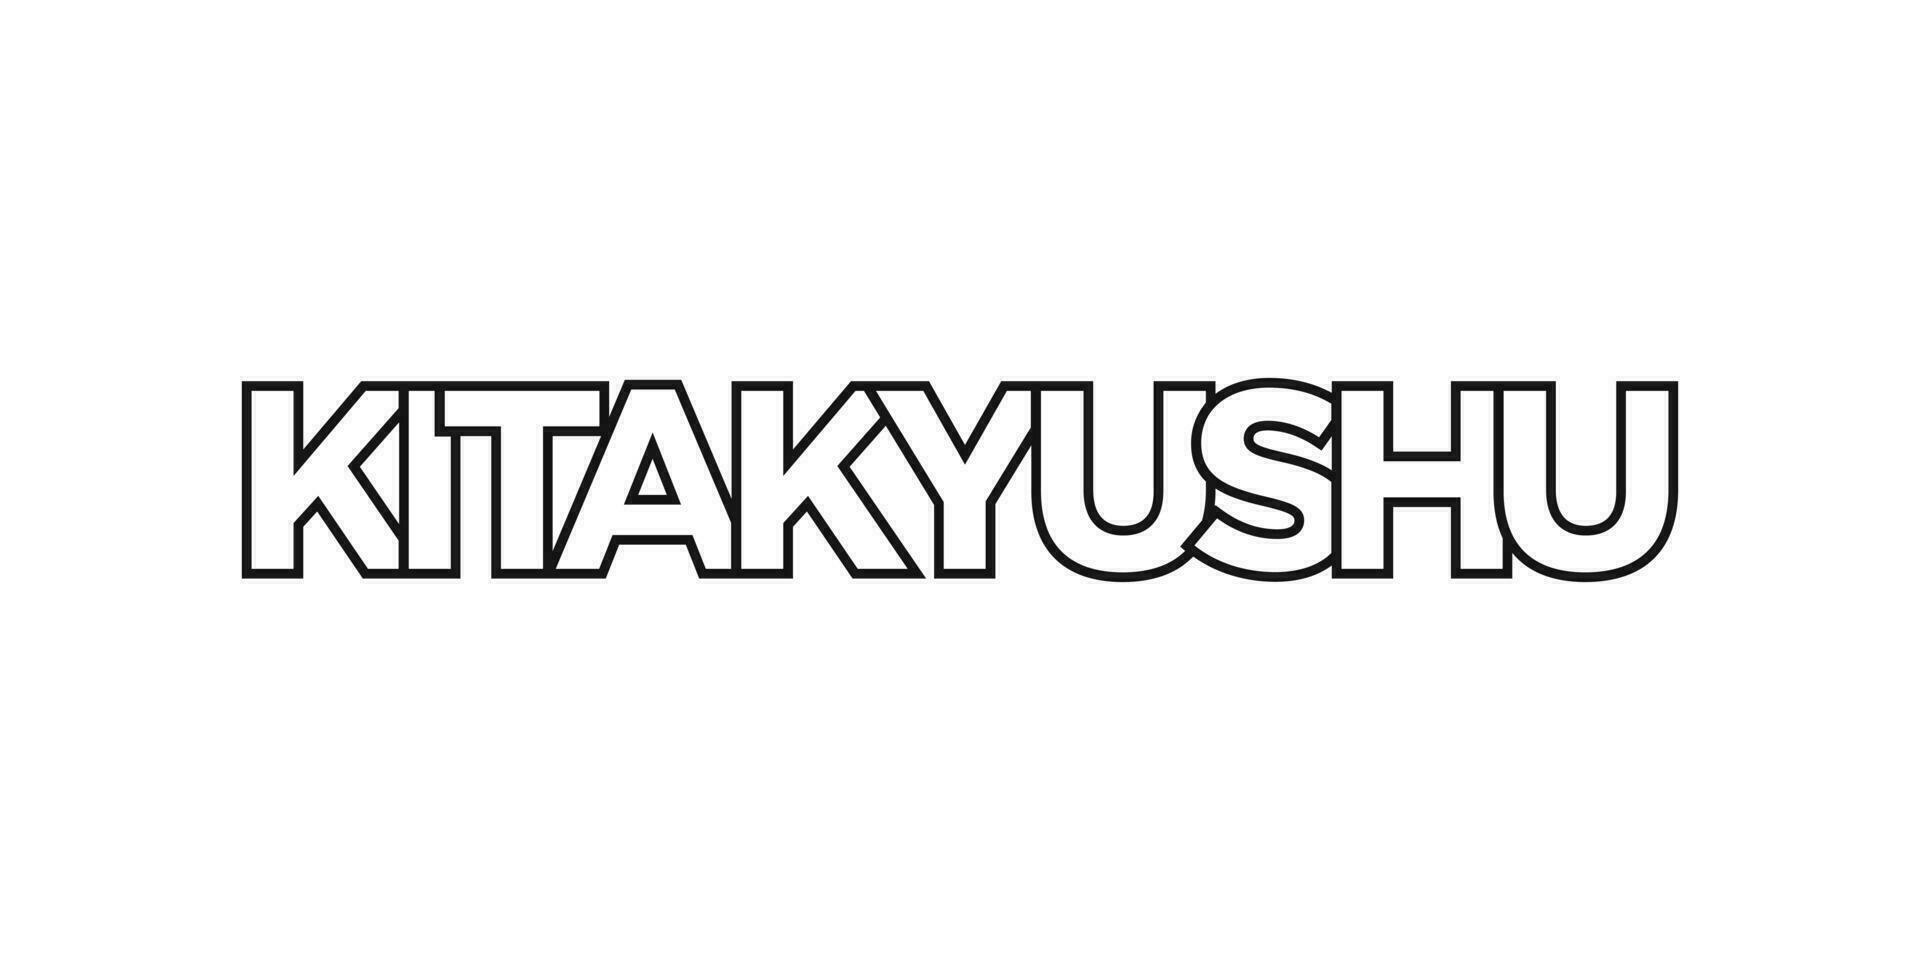 kitakyushu im das Japan Emblem. das Design Eigenschaften ein geometrisch Stil, Vektor Illustration mit Fett gedruckt Typografie im ein modern Schriftart. das Grafik Slogan Beschriftung.